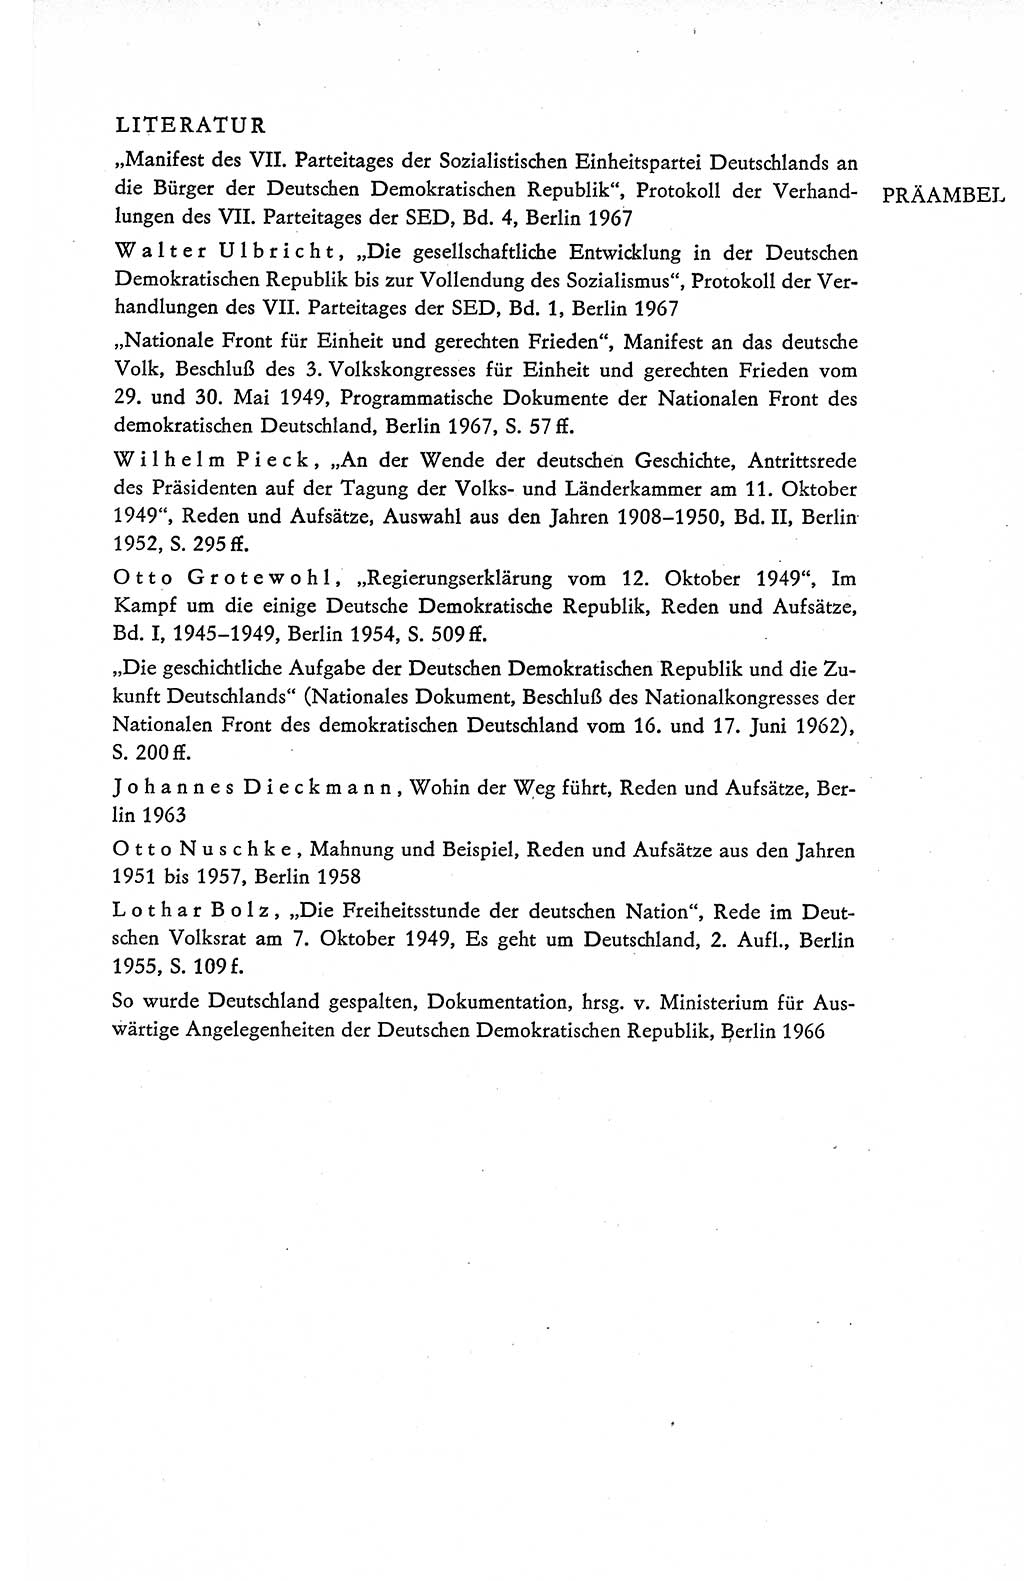 Verfassung der Deutschen Demokratischen Republik (DDR), Dokumente, Kommentar 1969, Band 1, Seite 211 (Verf. DDR Dok. Komm. 1969, Bd. 1, S. 211)